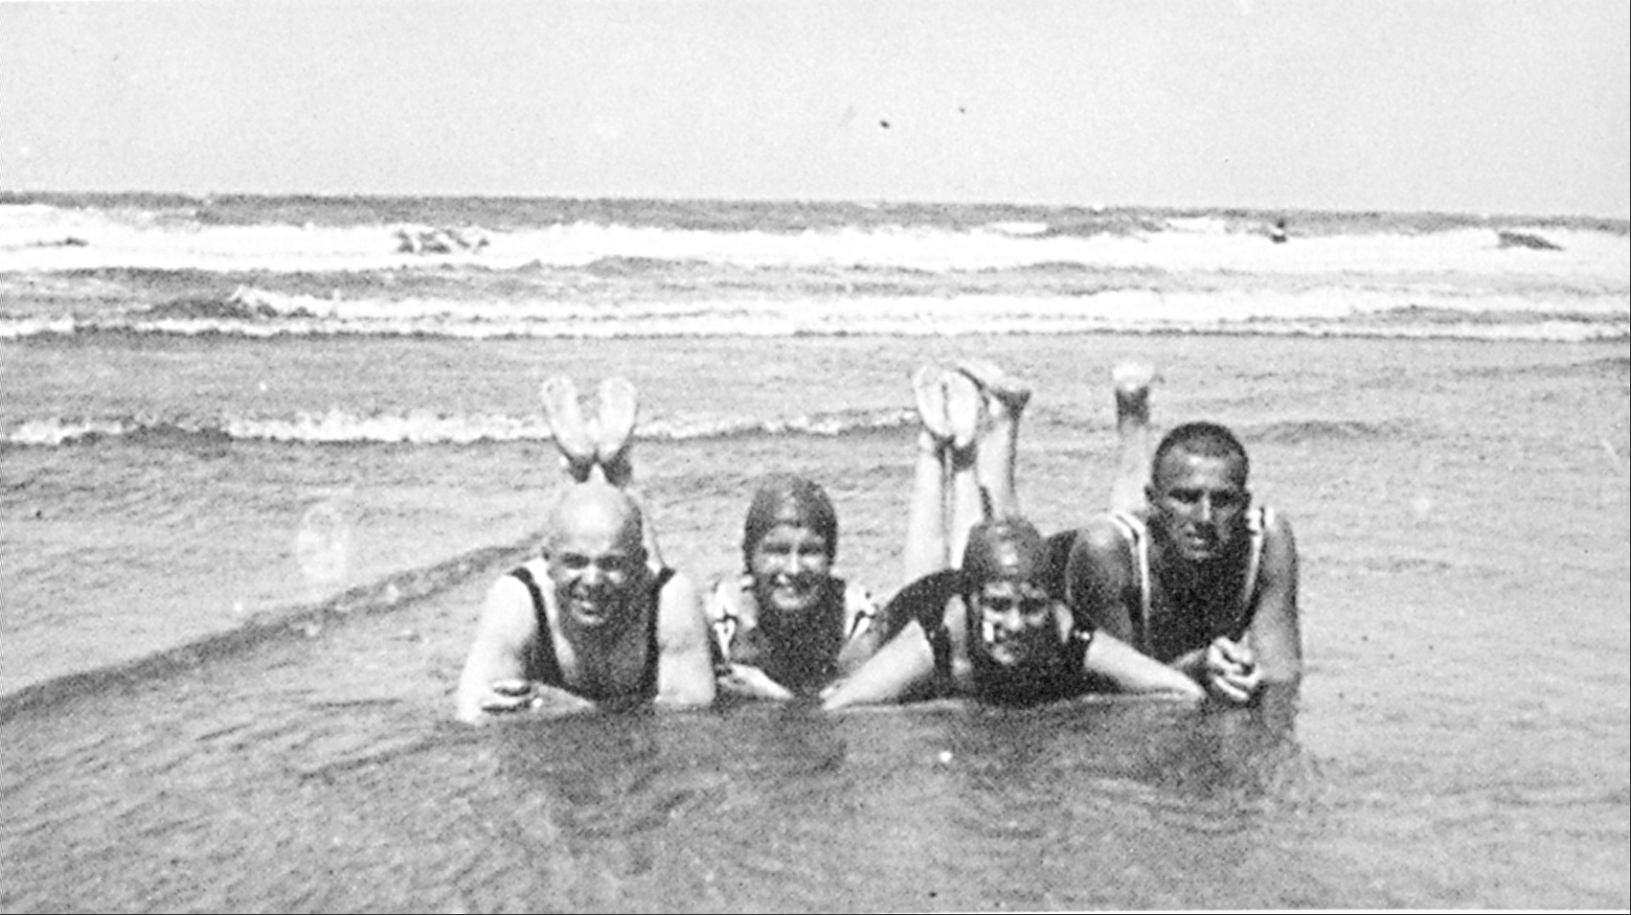 Chklóvski, R.S.Kuchner, Lilia Brik e Maiakóvski na praia, na ilha Norderney, na Alemanha, em 1923.